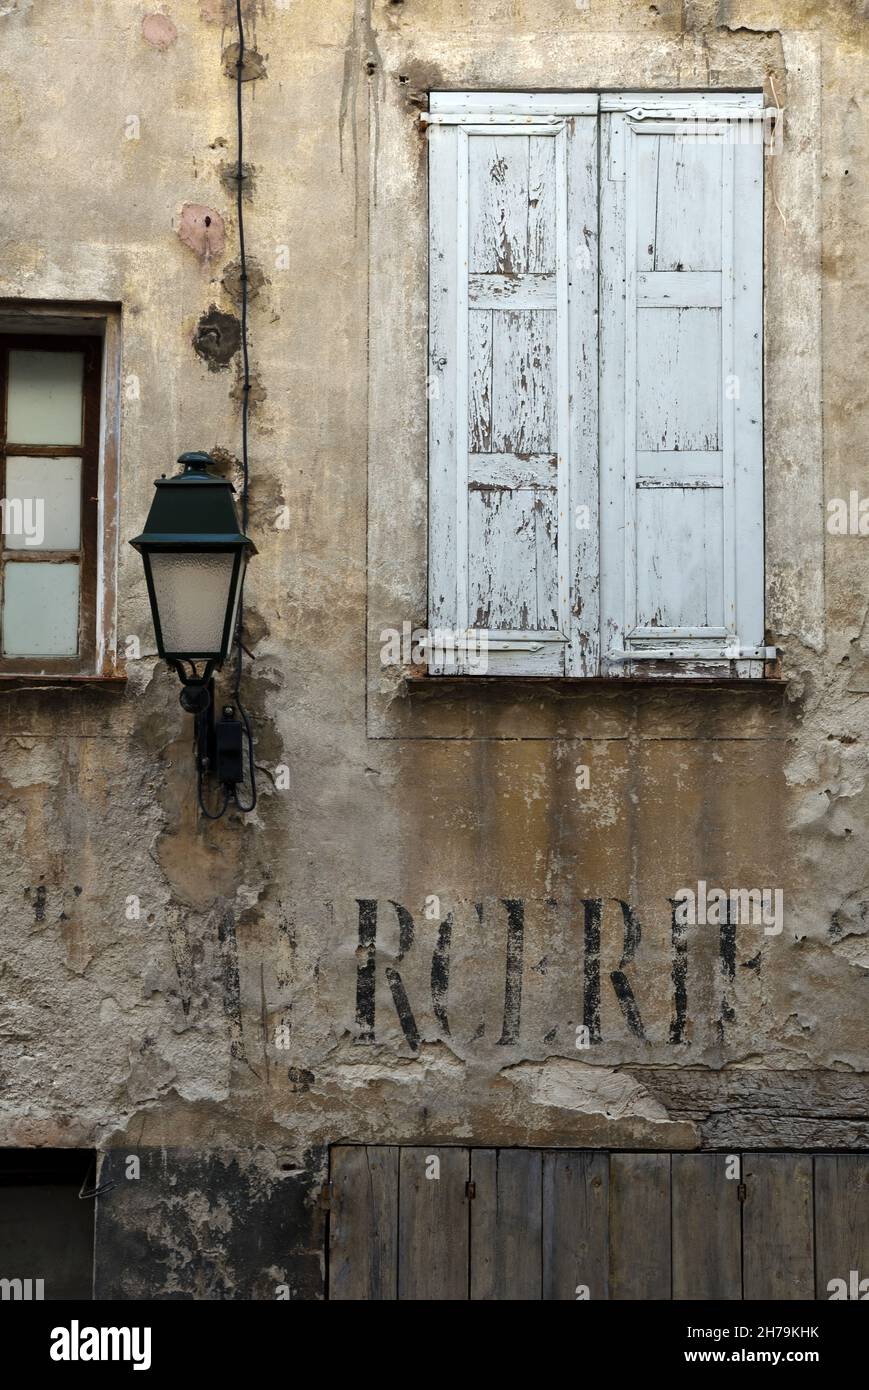 Heruntergekommene, vernachlässigte, verfallene oder verlassene Fassade des Dorfhauses in der Altstadt von Annot Alpes-de-Haute-Provence Provence Frankreich Stockfoto